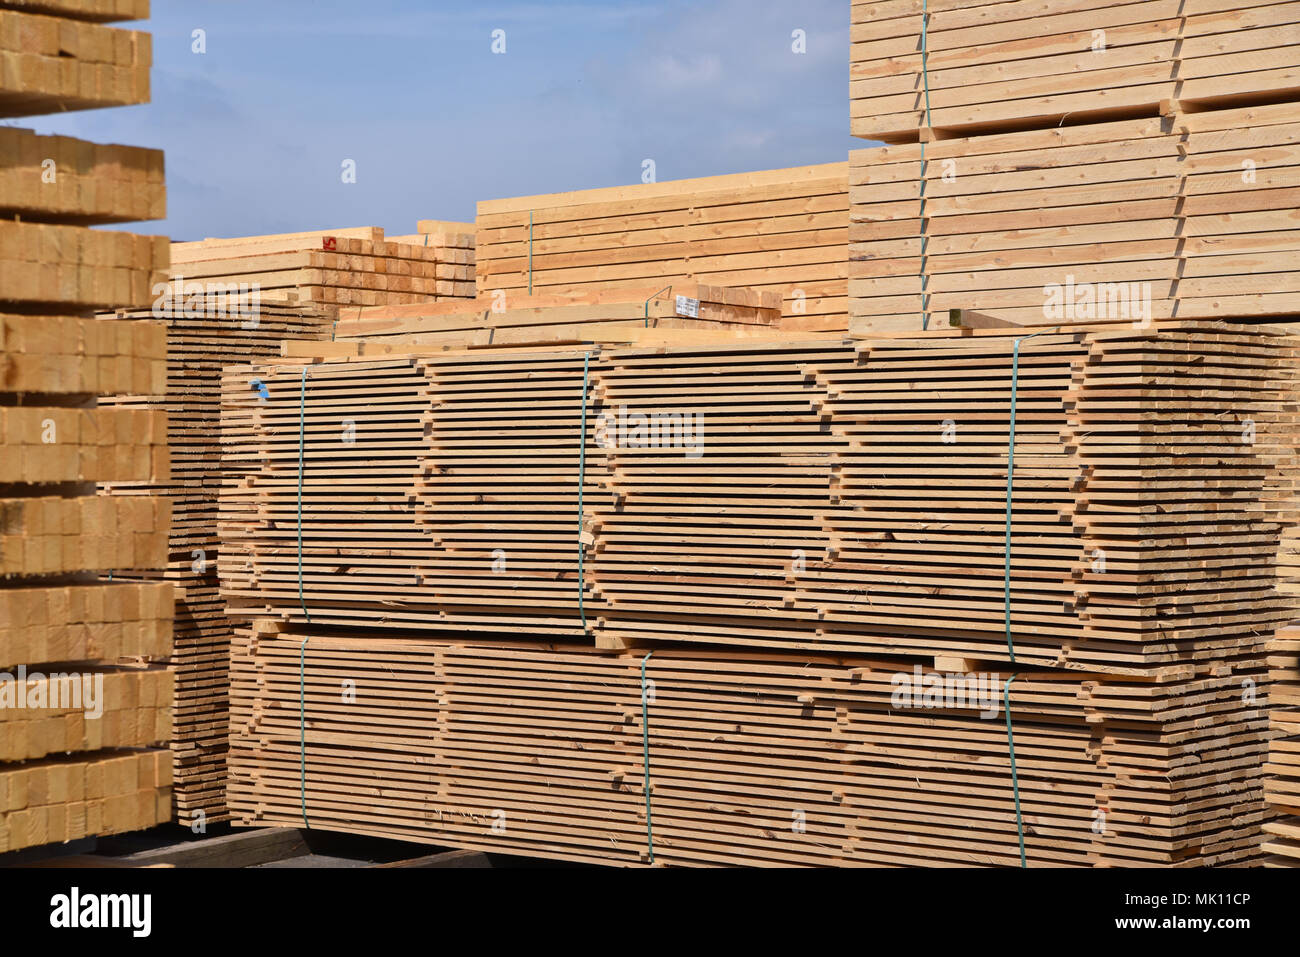 La planta industrial aserradero - Almacenamiento de tablas de madera Foto de stock